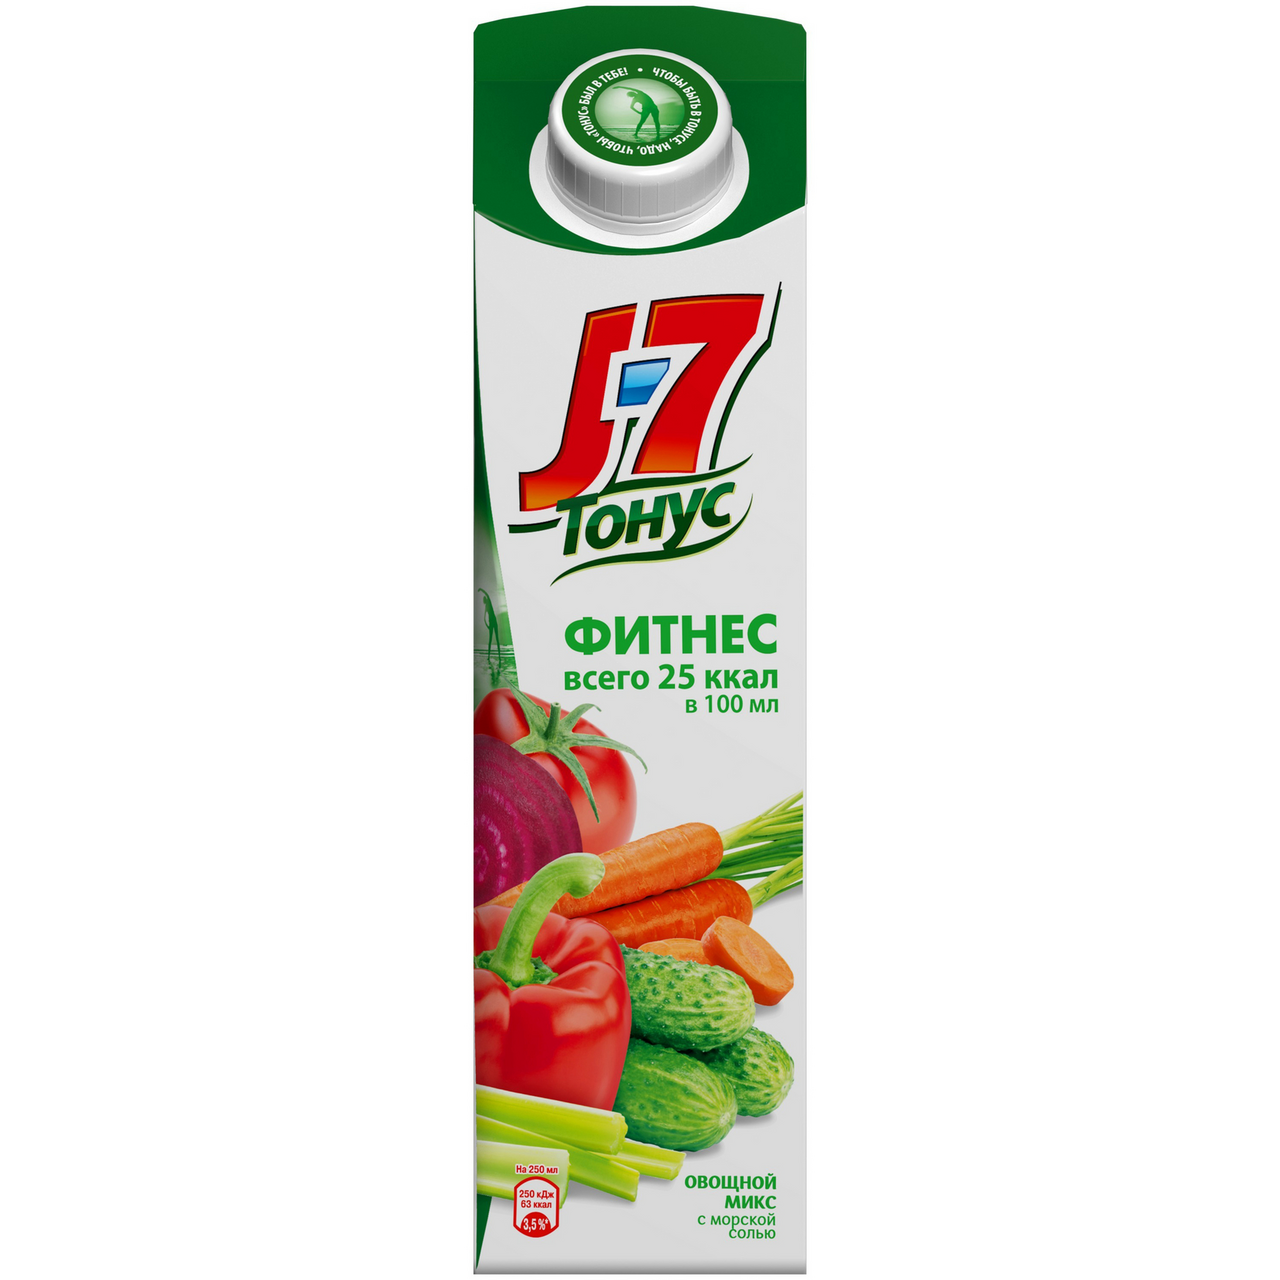 Нектар J7 ТОНУС Фитнес овощной микс с солью, 0,9л